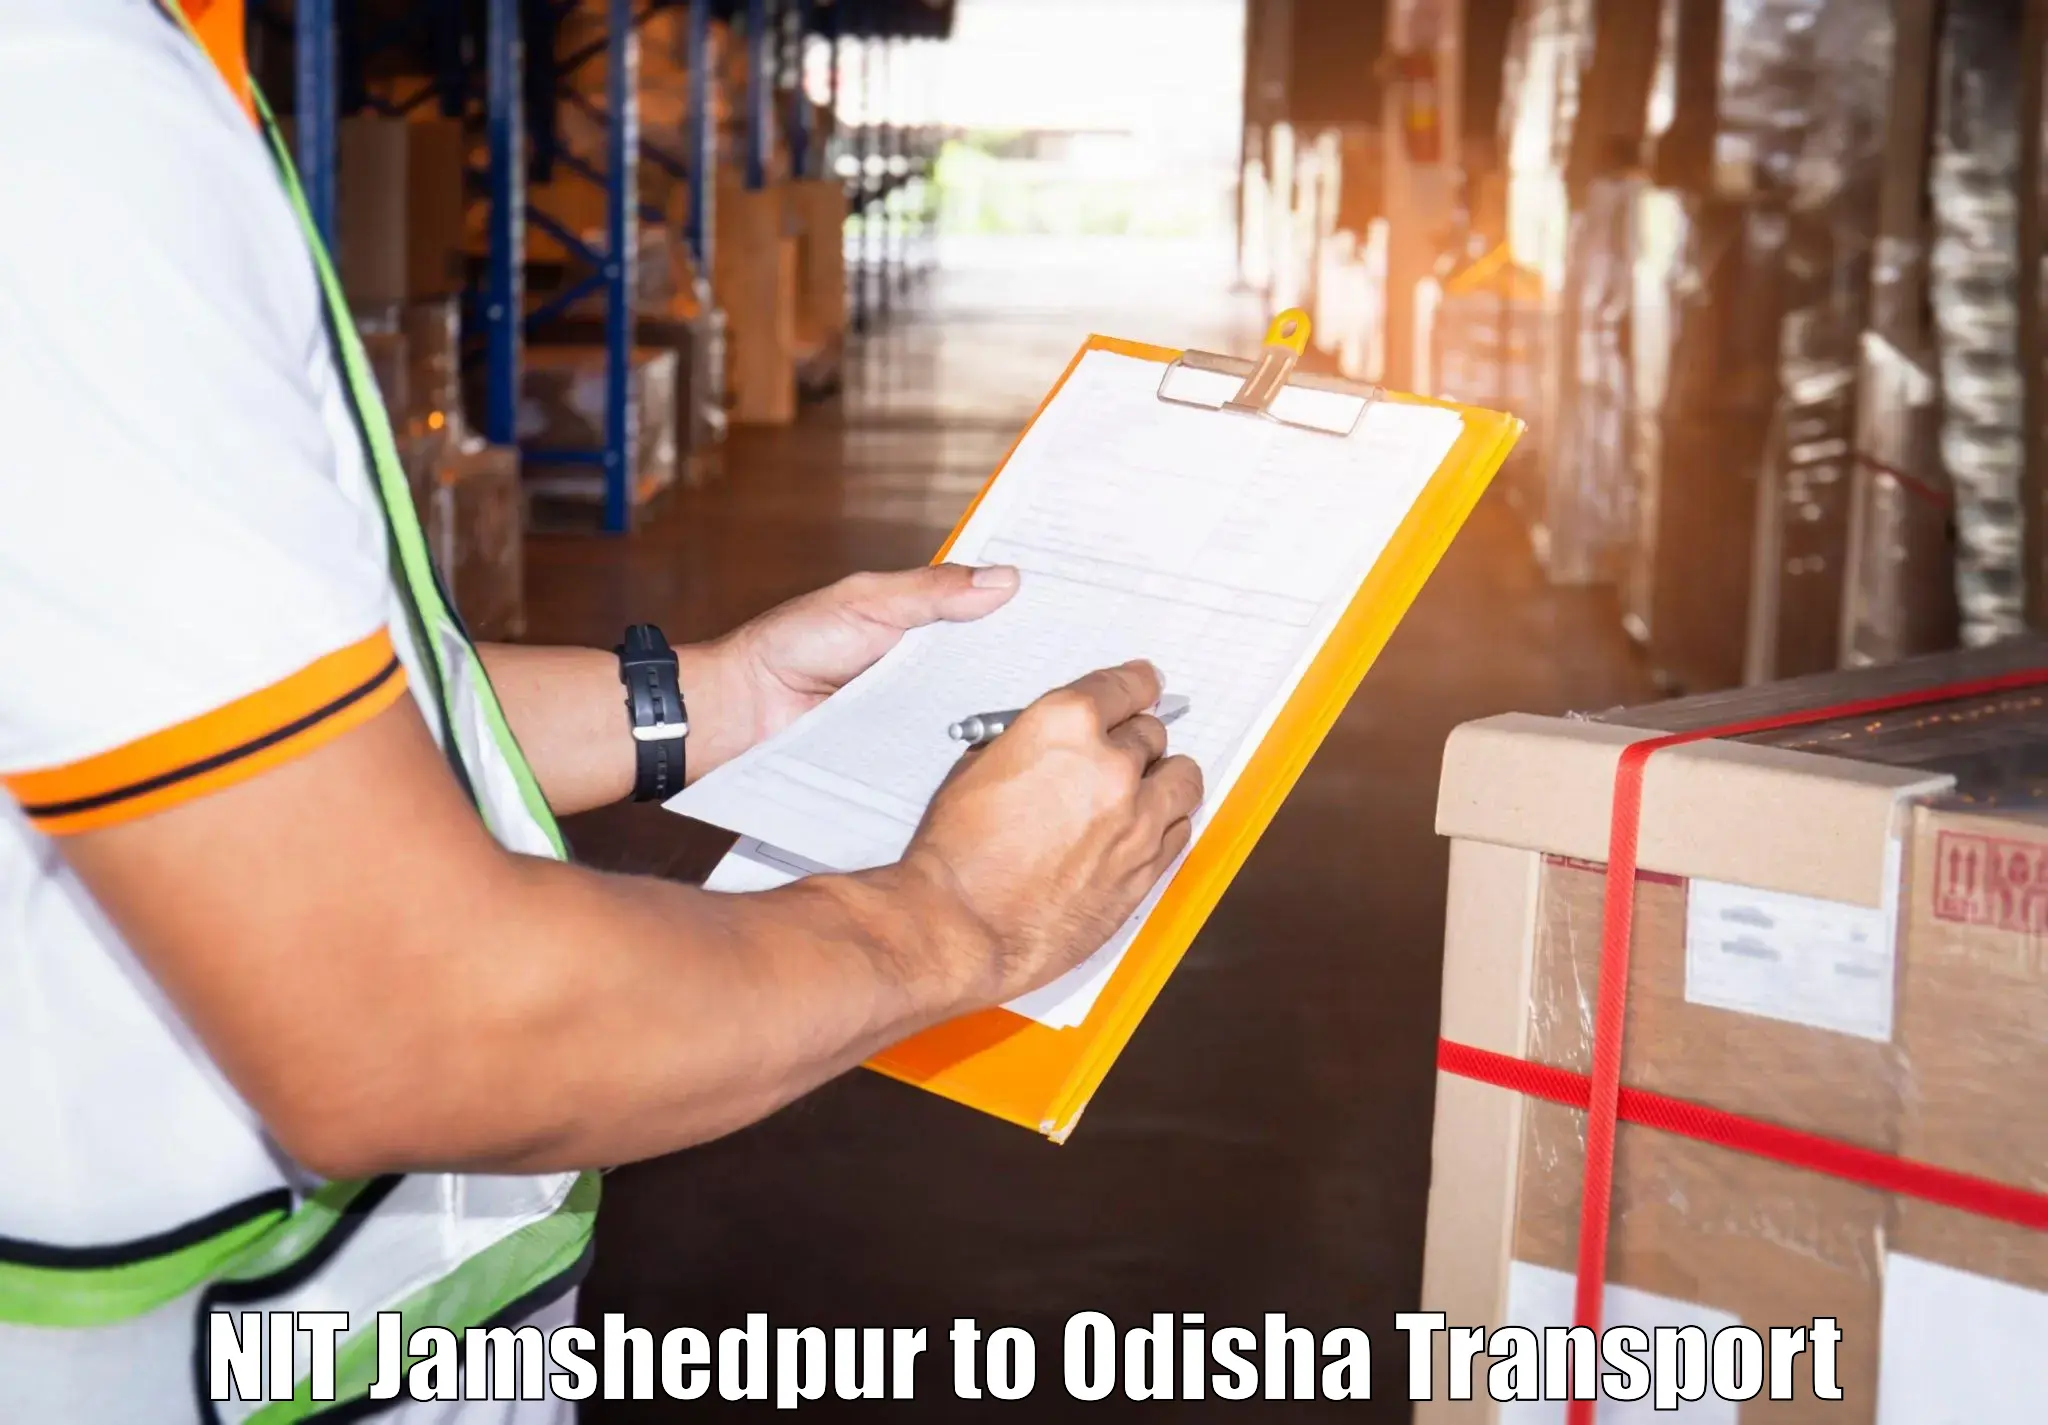 Cargo transportation services NIT Jamshedpur to Sankerko